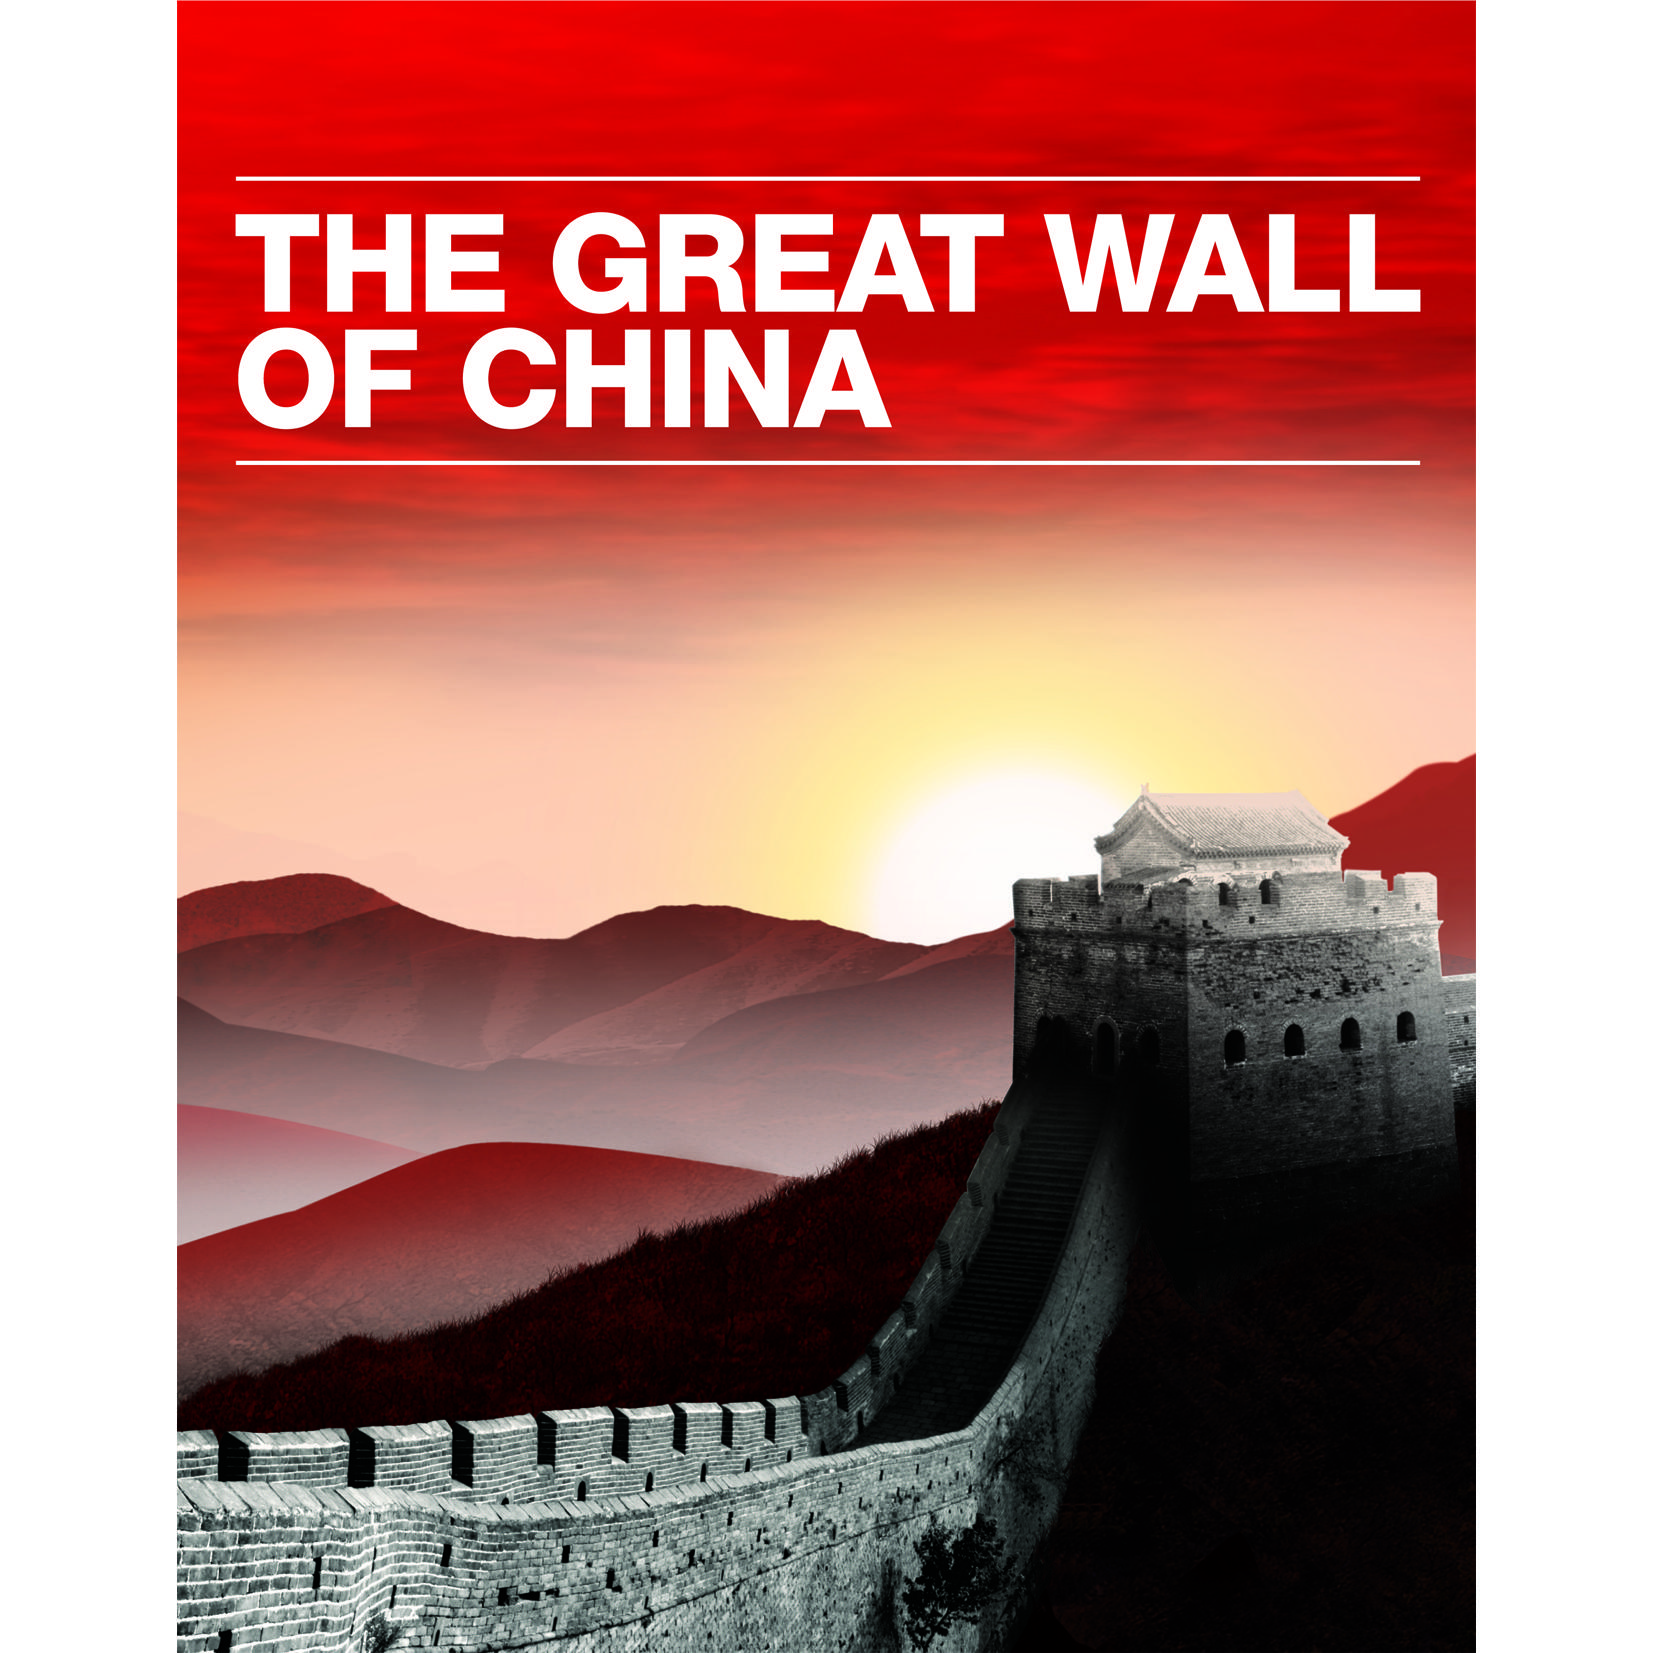 Great Wall of China Logo - The Great Wall of China